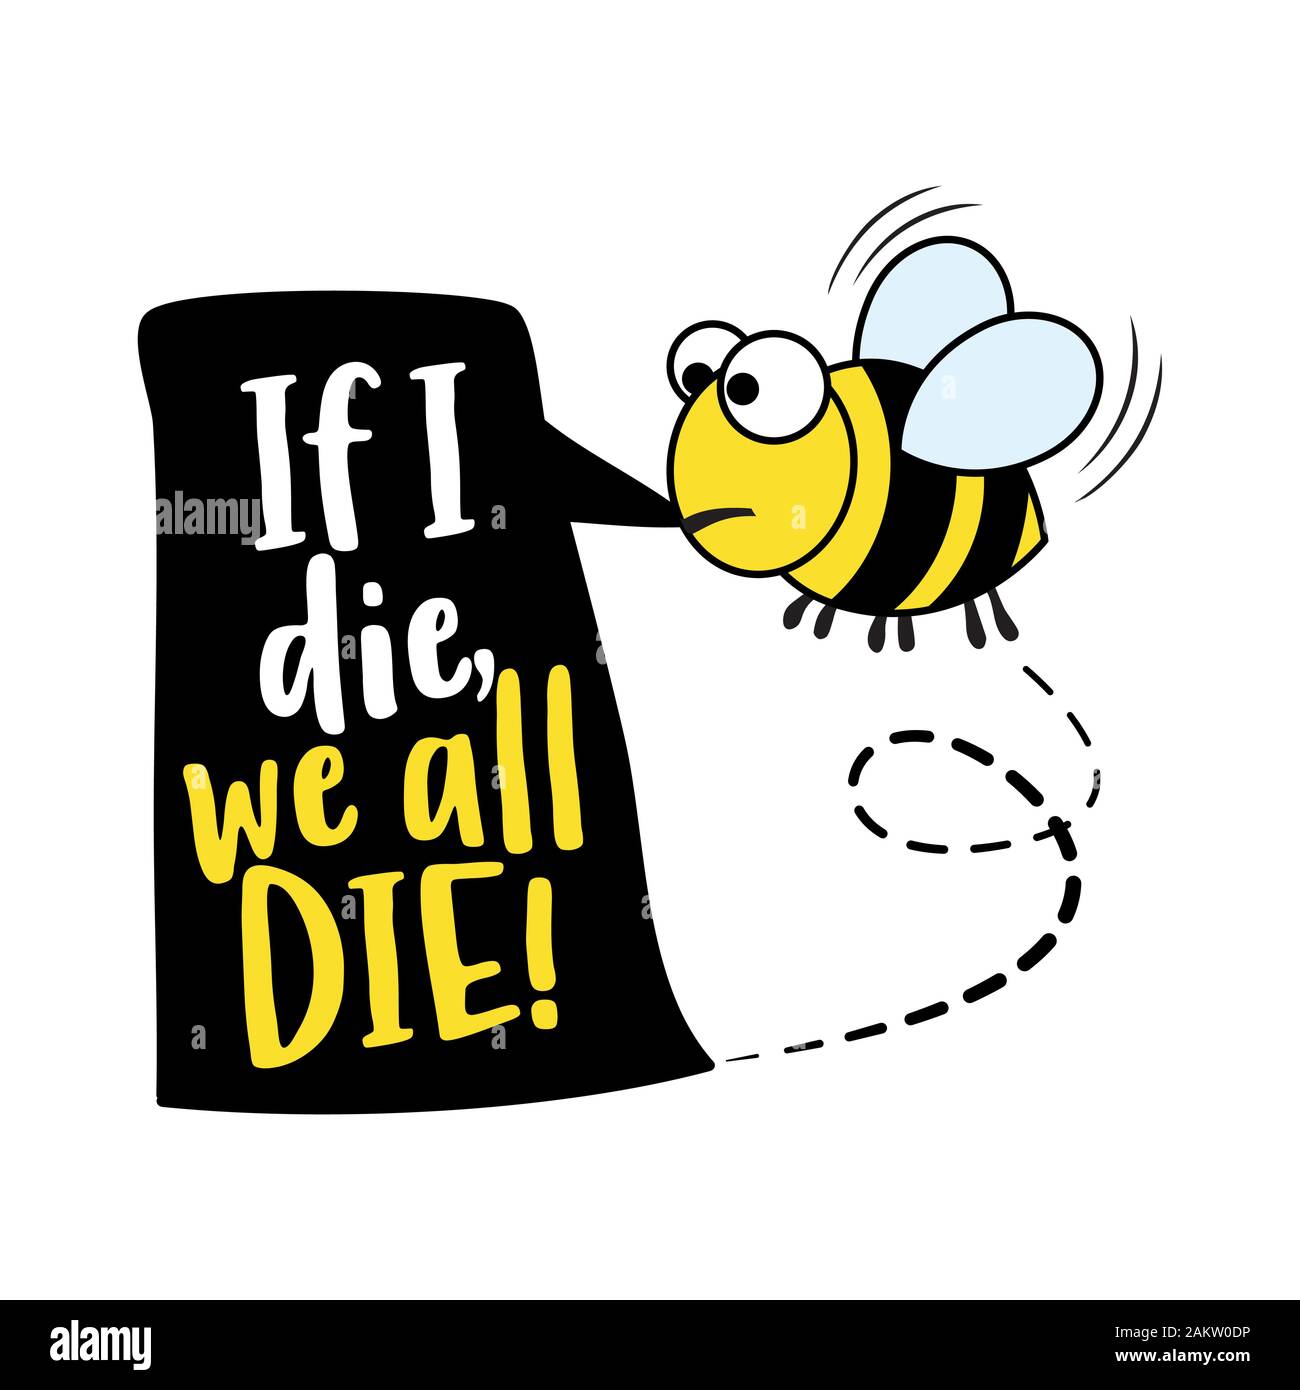 Wenn ich sterben wir alle sterben - Alarm text Zitate und Biene Zeichnung.  Schriftzug Poster oder t-shirt Textil Grafik Design. Cute fat Biene  Charakter Illustration mit Stock-Vektorgrafik - Alamy